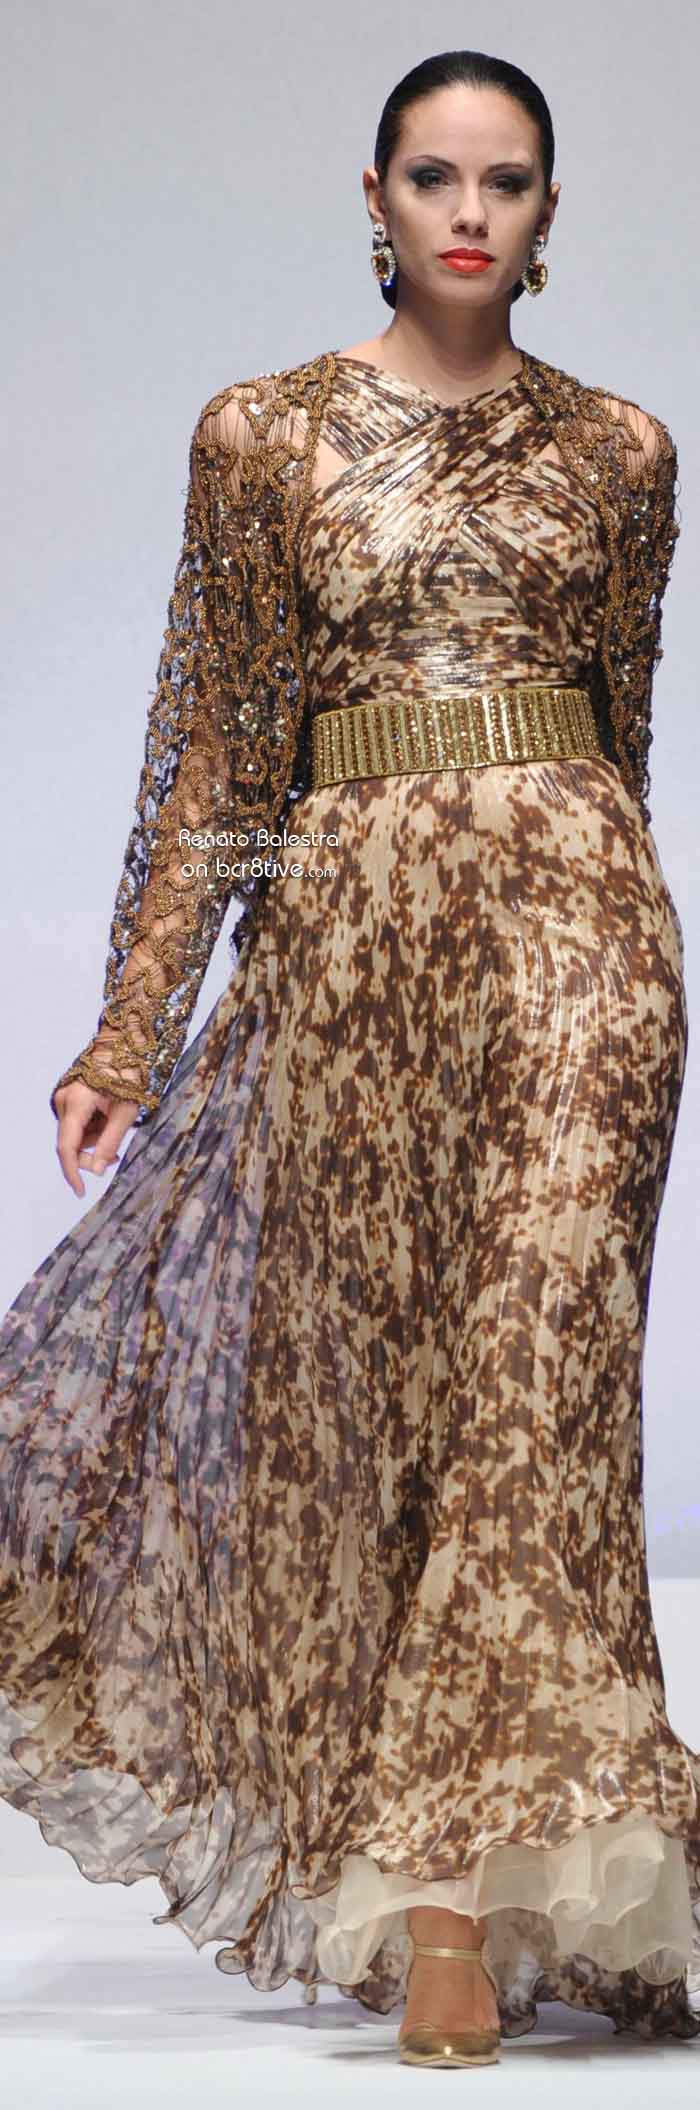 Renato Balestra Fall Winter 2012-13 Couture